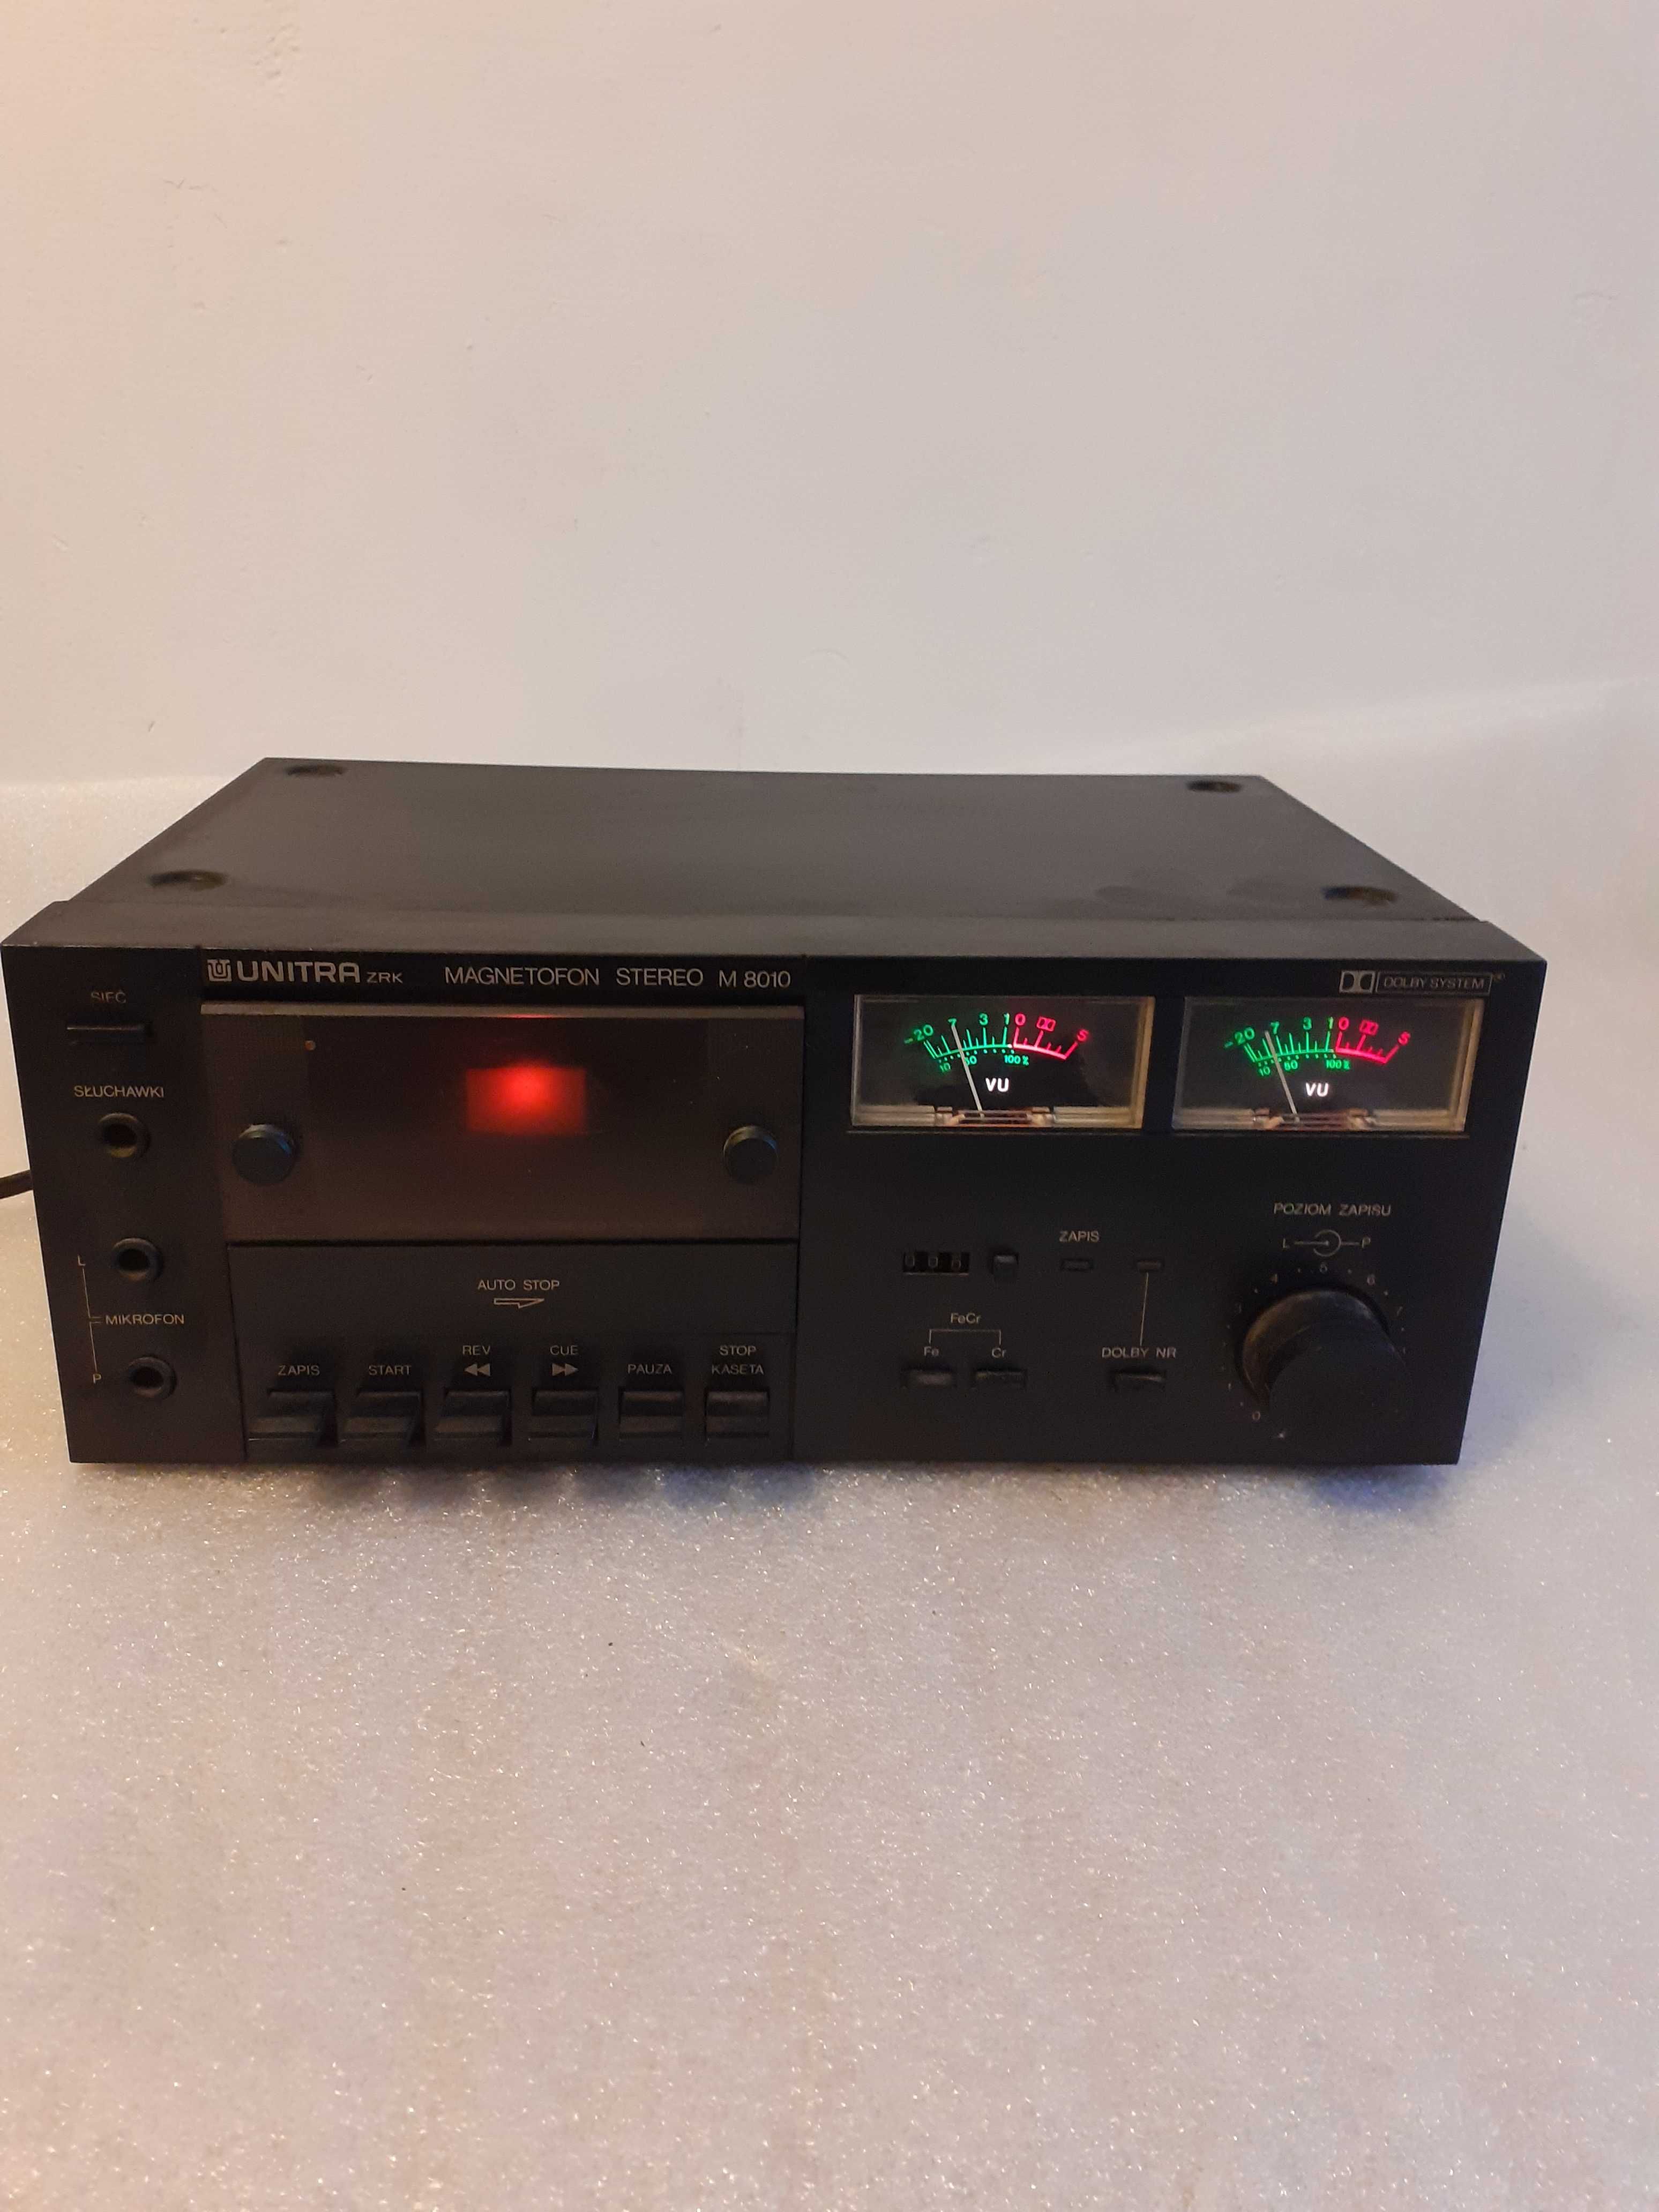 Unitra ZRK Magnetofon Stereo M8010